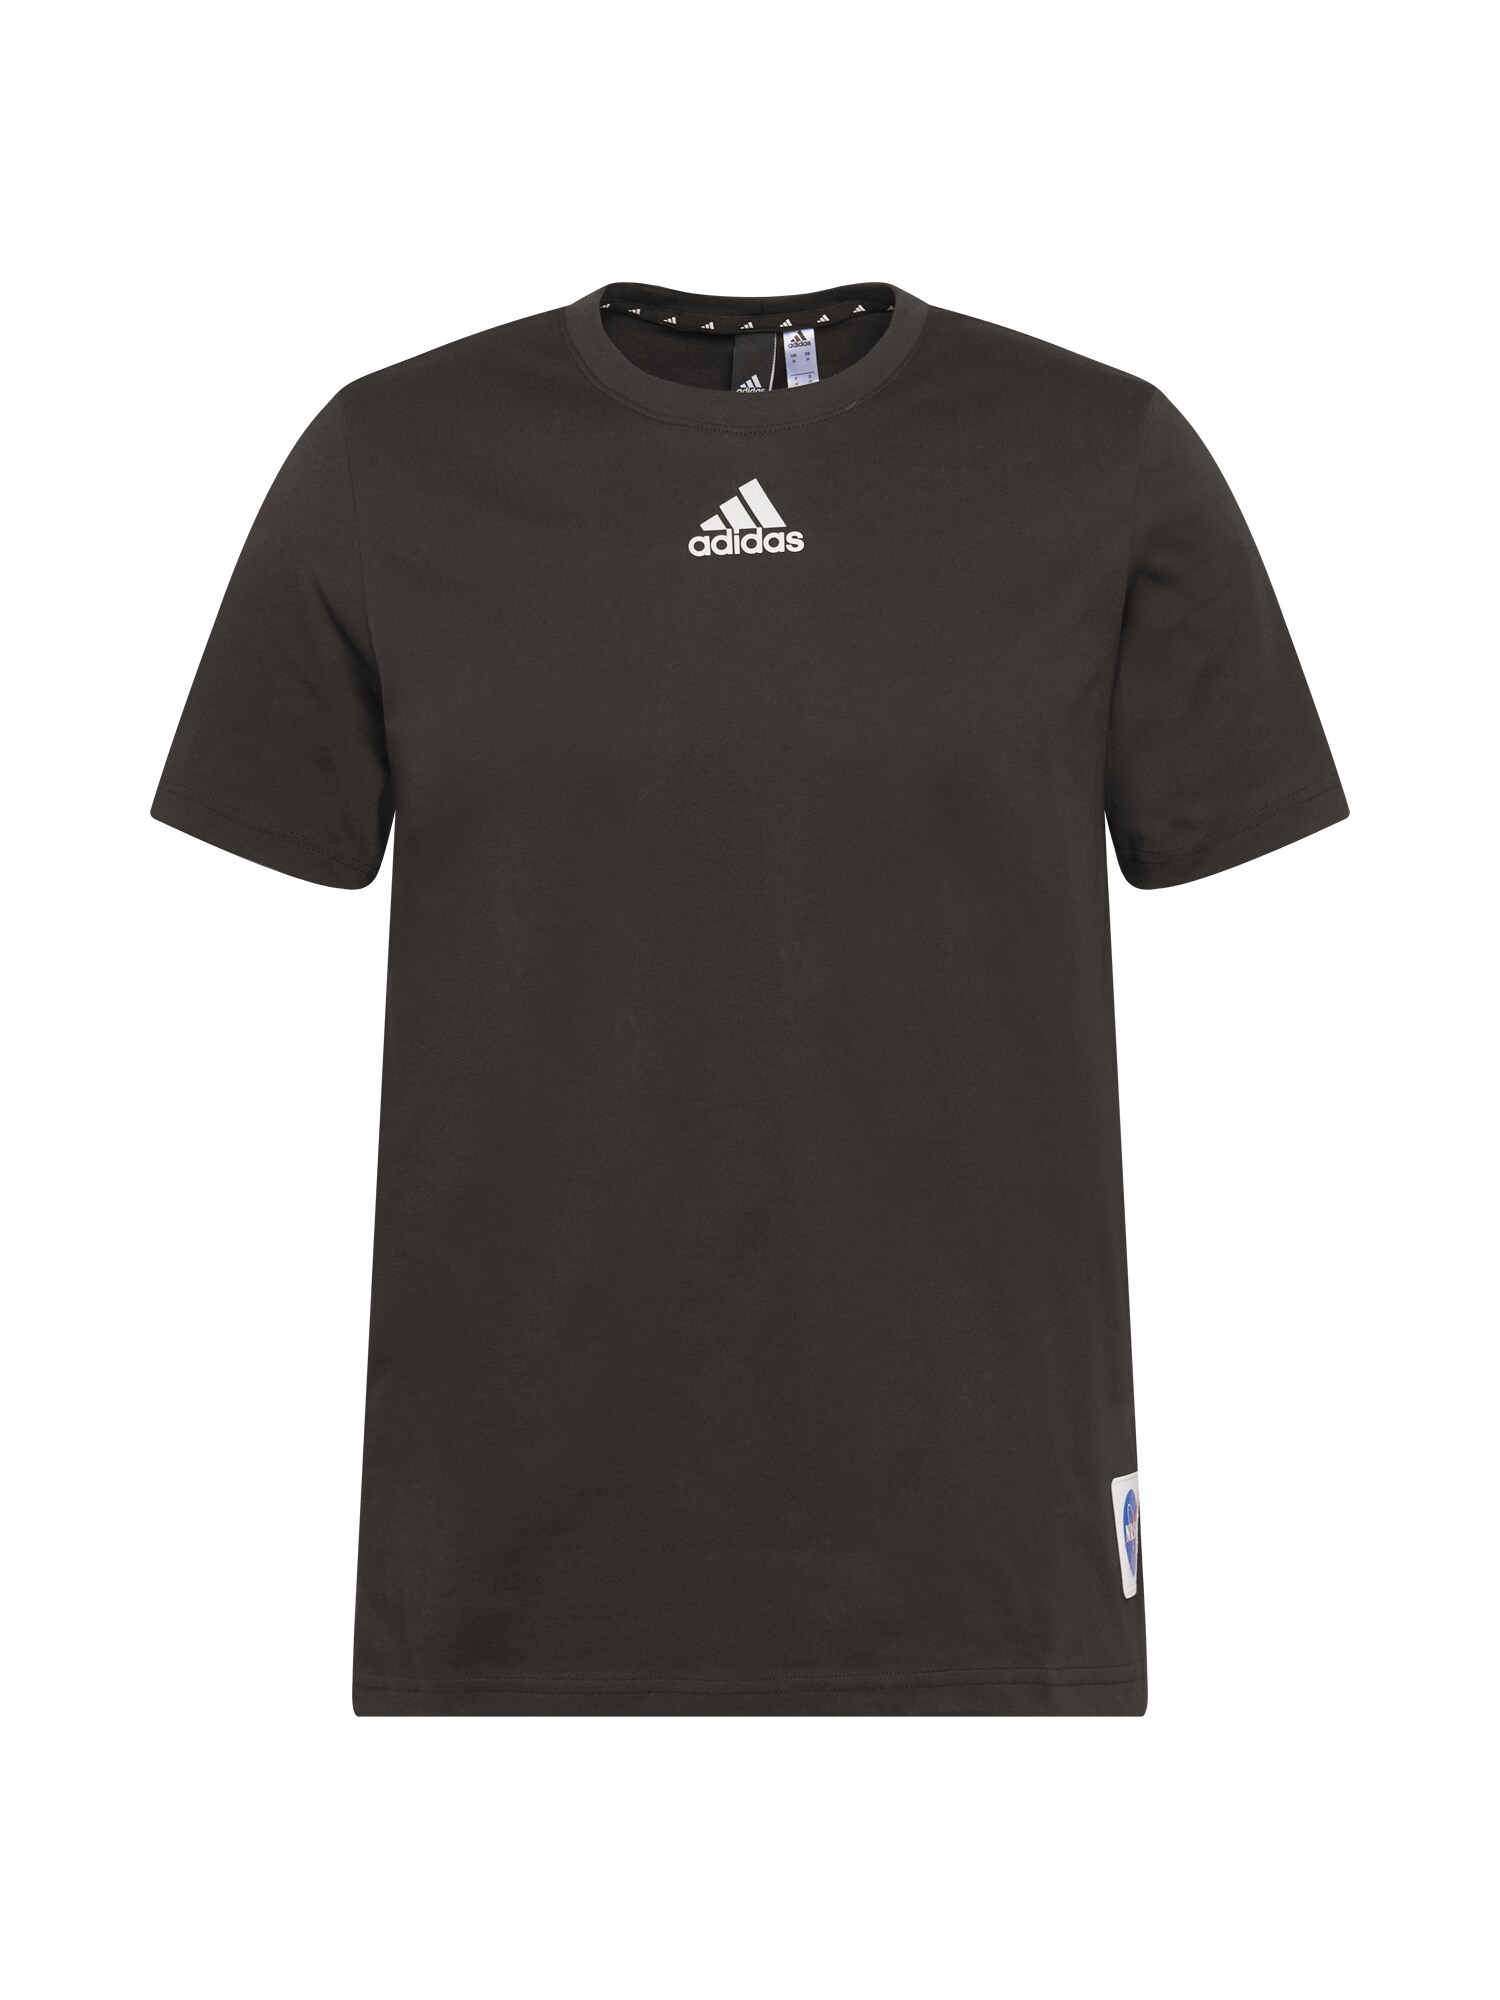 ADIDAS PERFORMANCE Sportiniai marškinėliai  juoda / balta / mėlyna / raudona / vyšninė spalva